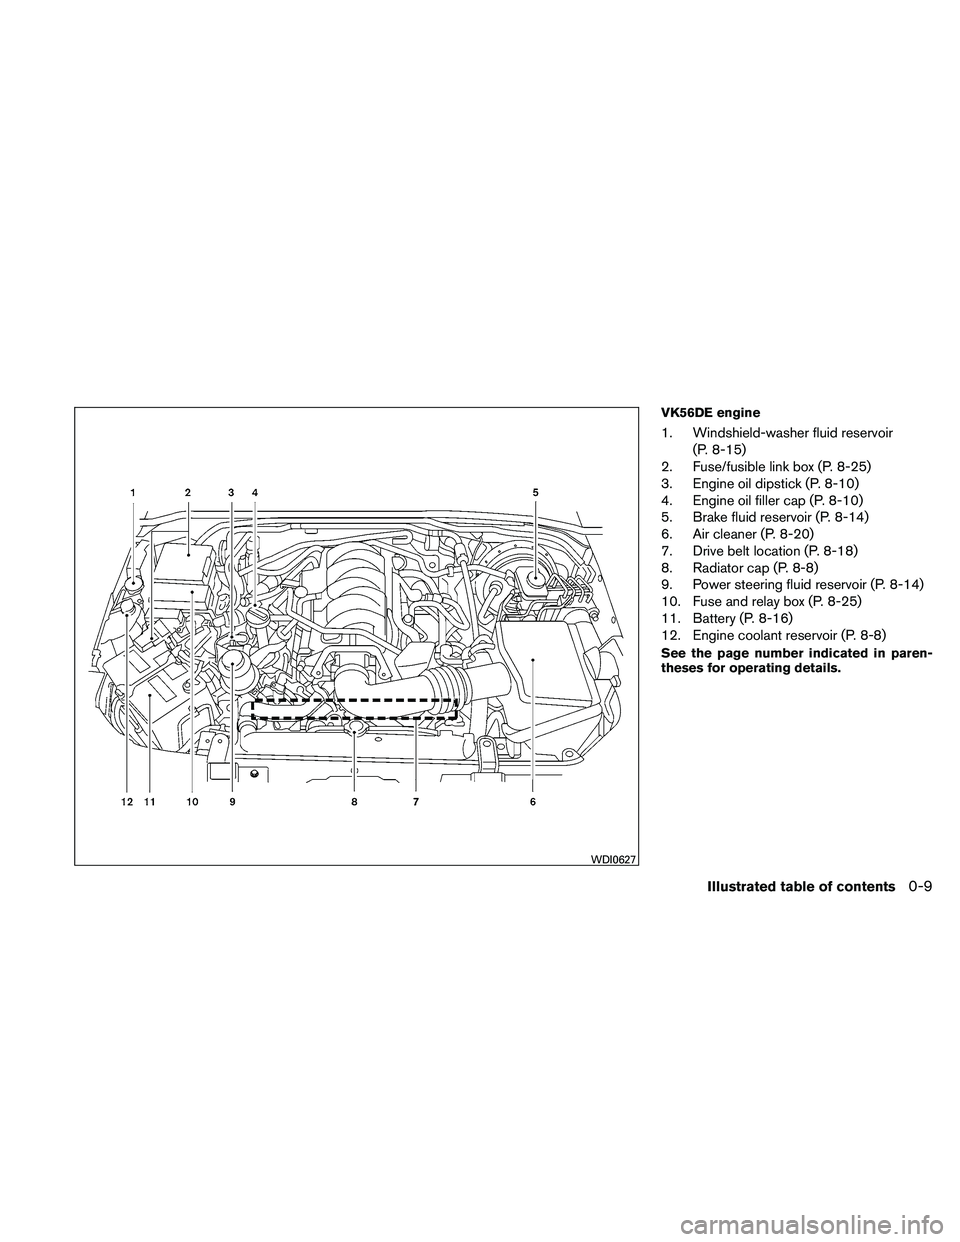 NISSAN PATHFINDER 2011  Owner´s Manual VK56DE engine
1. Windshield-washer fluid reservoir(P. 8-15)
2. Fuse/fusible link box (P. 8-25)
3. Engine oil dipstick (P. 8-10)
4. Engine oil filler cap (P. 8-10)
5. Brake fluid reservoir (P. 8-14)
6.